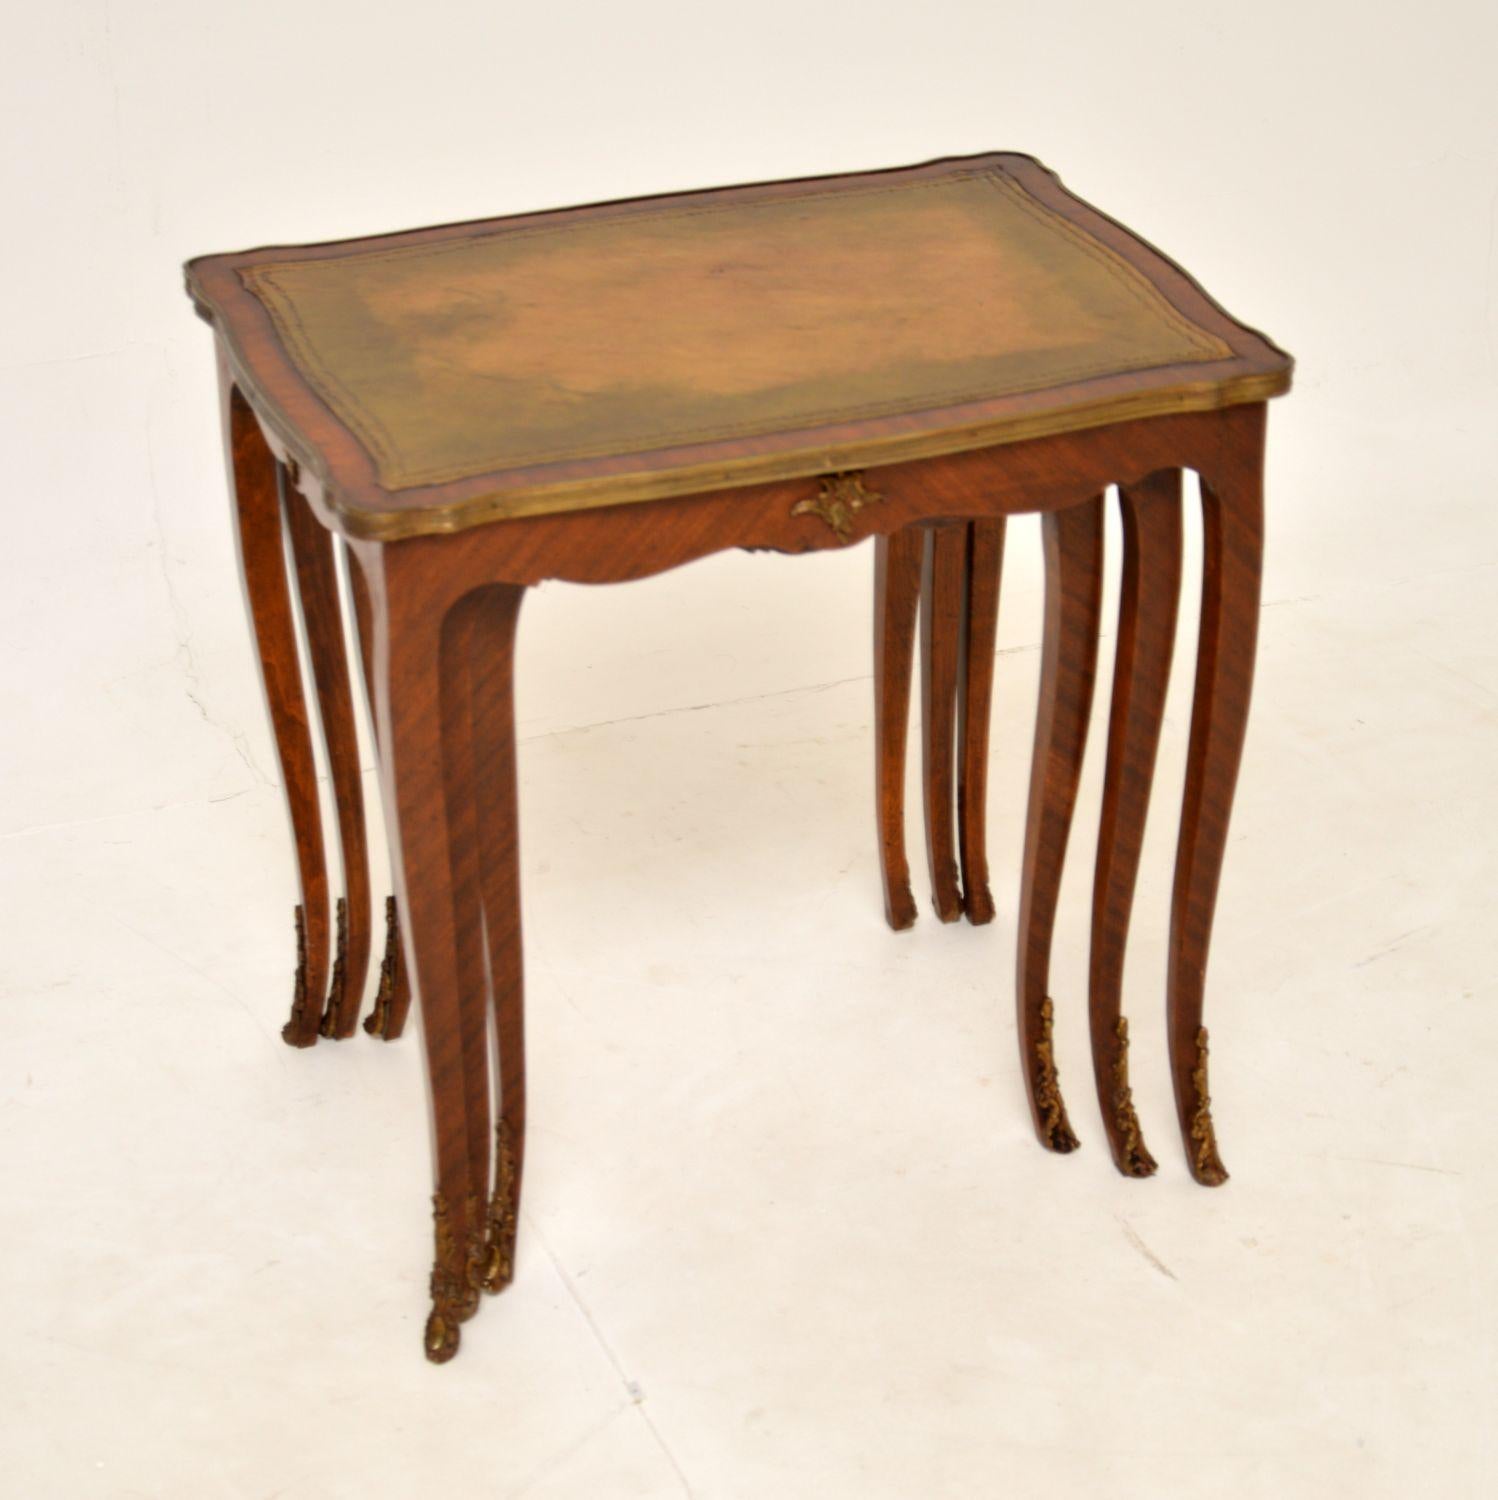 Ein wunderschönes antikes französisches Tischnest, mit eingelegten Lederplatten. Sie wurden in Frankreich hergestellt und stammen aus den 1920-1930er Jahren.

Die Qualität ist hervorragend, sie haben eine schöne Größe und ein sehr nützliches Design.